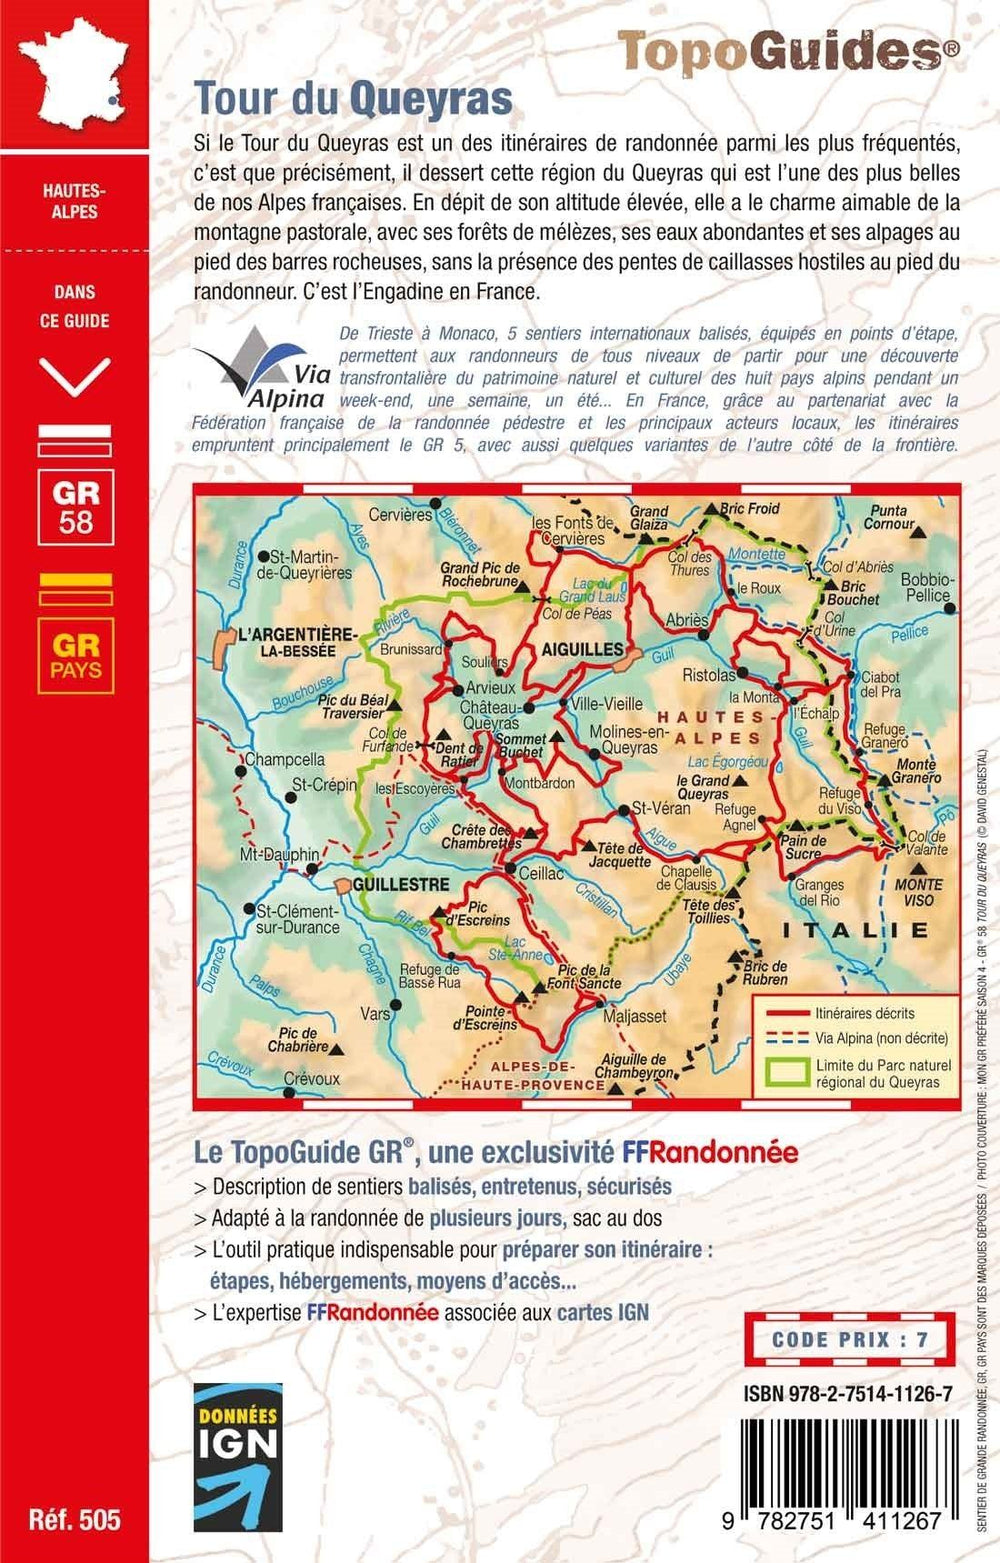 Topoguide de randonnée - Tour du Queyras | FFR guide de randonnée FFR - Fédération Française de Randonnée 